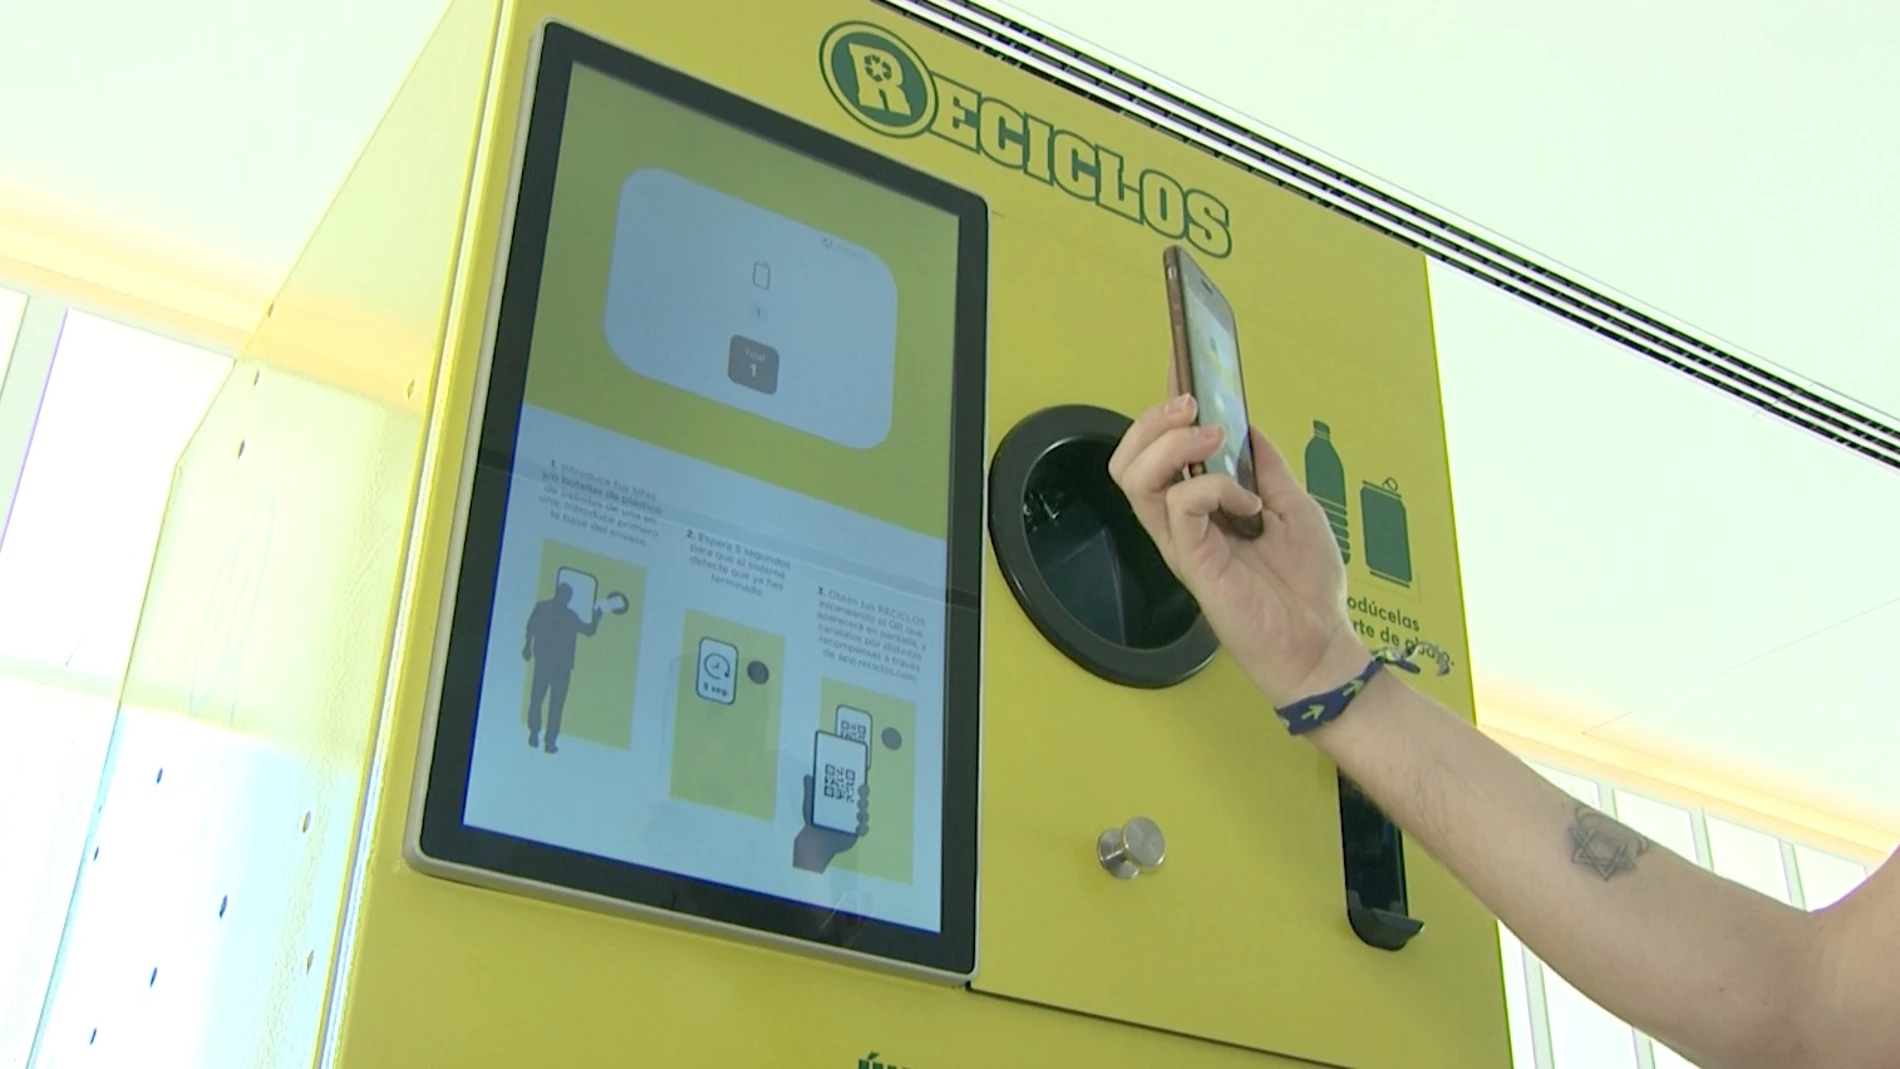 Ecoembes instalará más de 100 máquinas que recompensan por reciclar en diferentes estaciones de transporte, centros comerciales y de ocio del país